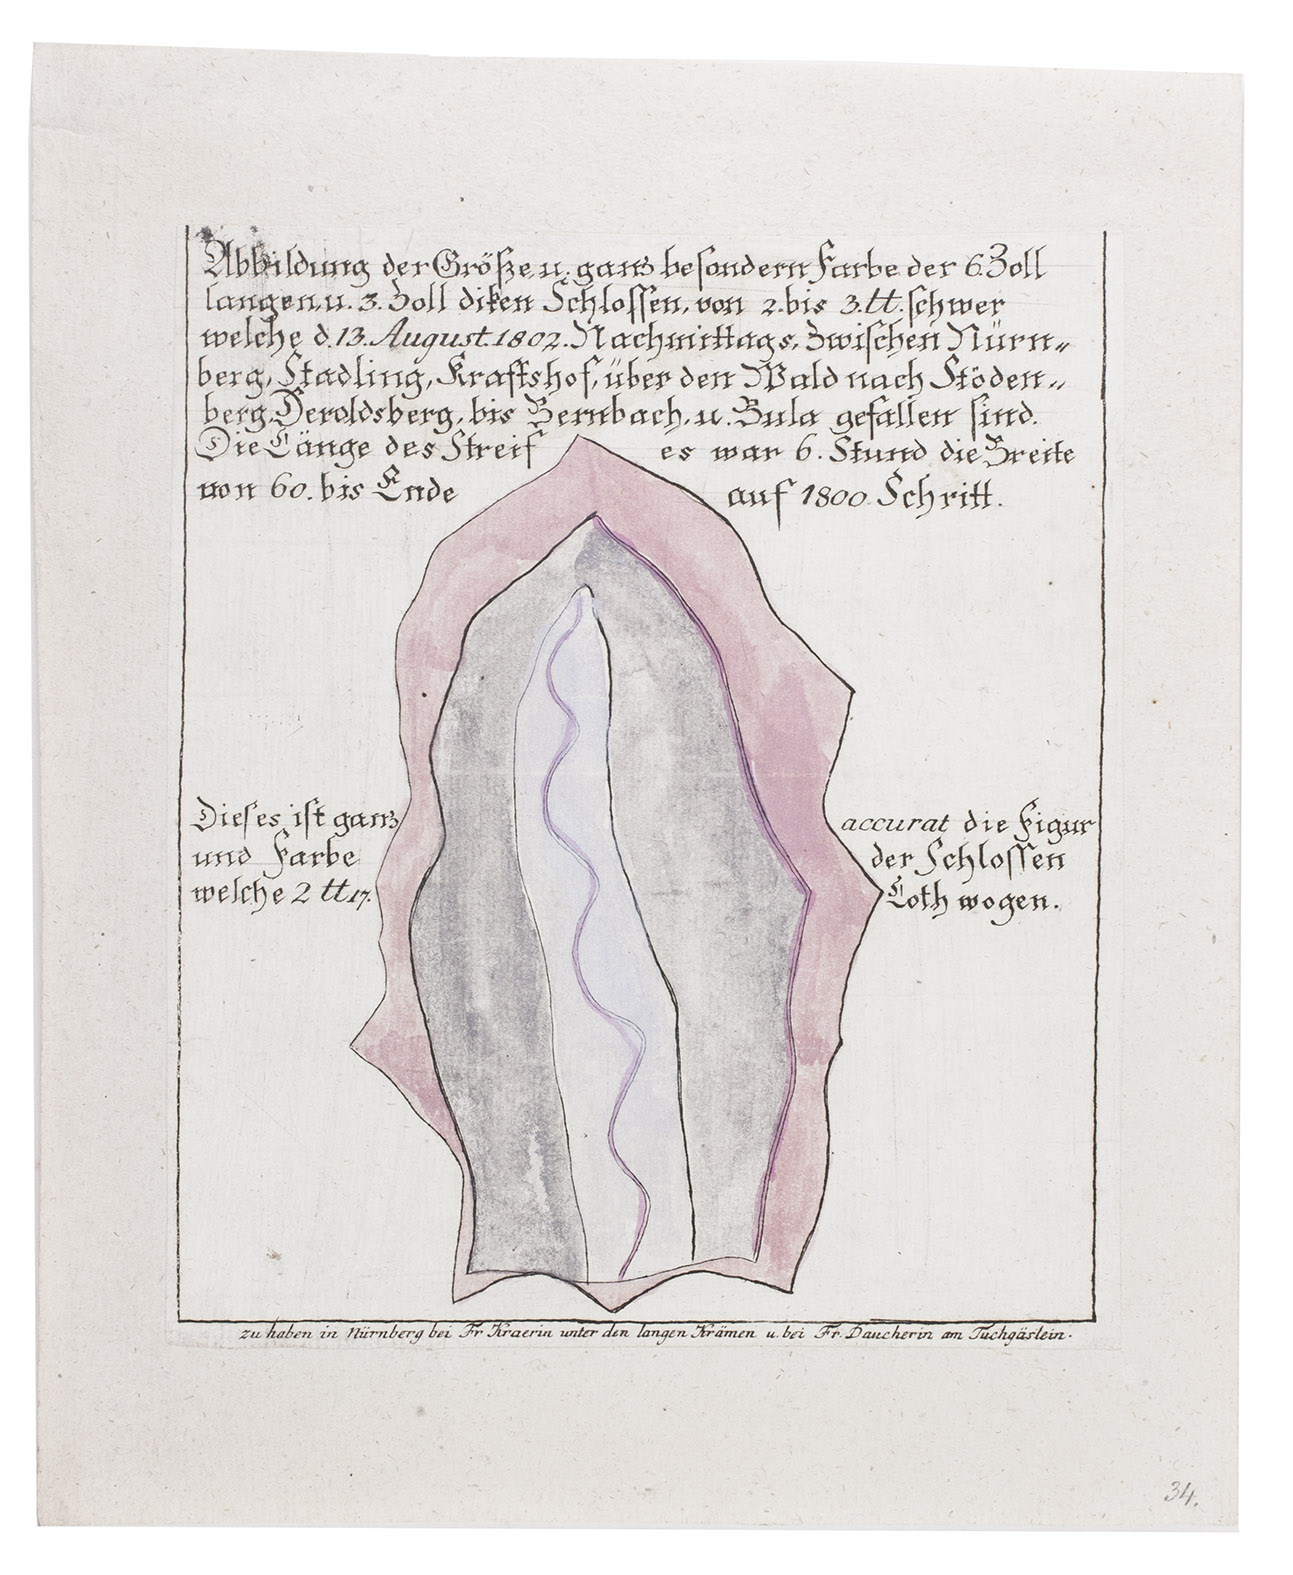 [METEOROLOGY - HAIL STONE]. - Abbildung der Gre, u. ganz besondern Farbe der 6 Zoll langen, u. 3 Zoll diken Schlossen, von 2. bis 3. ll. schwer welche d. 13. August. 1802. . ..Nuremberg, Fr[au] Kraerin, Fr[au]. Daucherin, [1802]. 4to (20.517.5 cm). Engraved print on laid paper, coloured by a contemporary hand as published.  Mounted on a piece of paper (ca. 1926?).